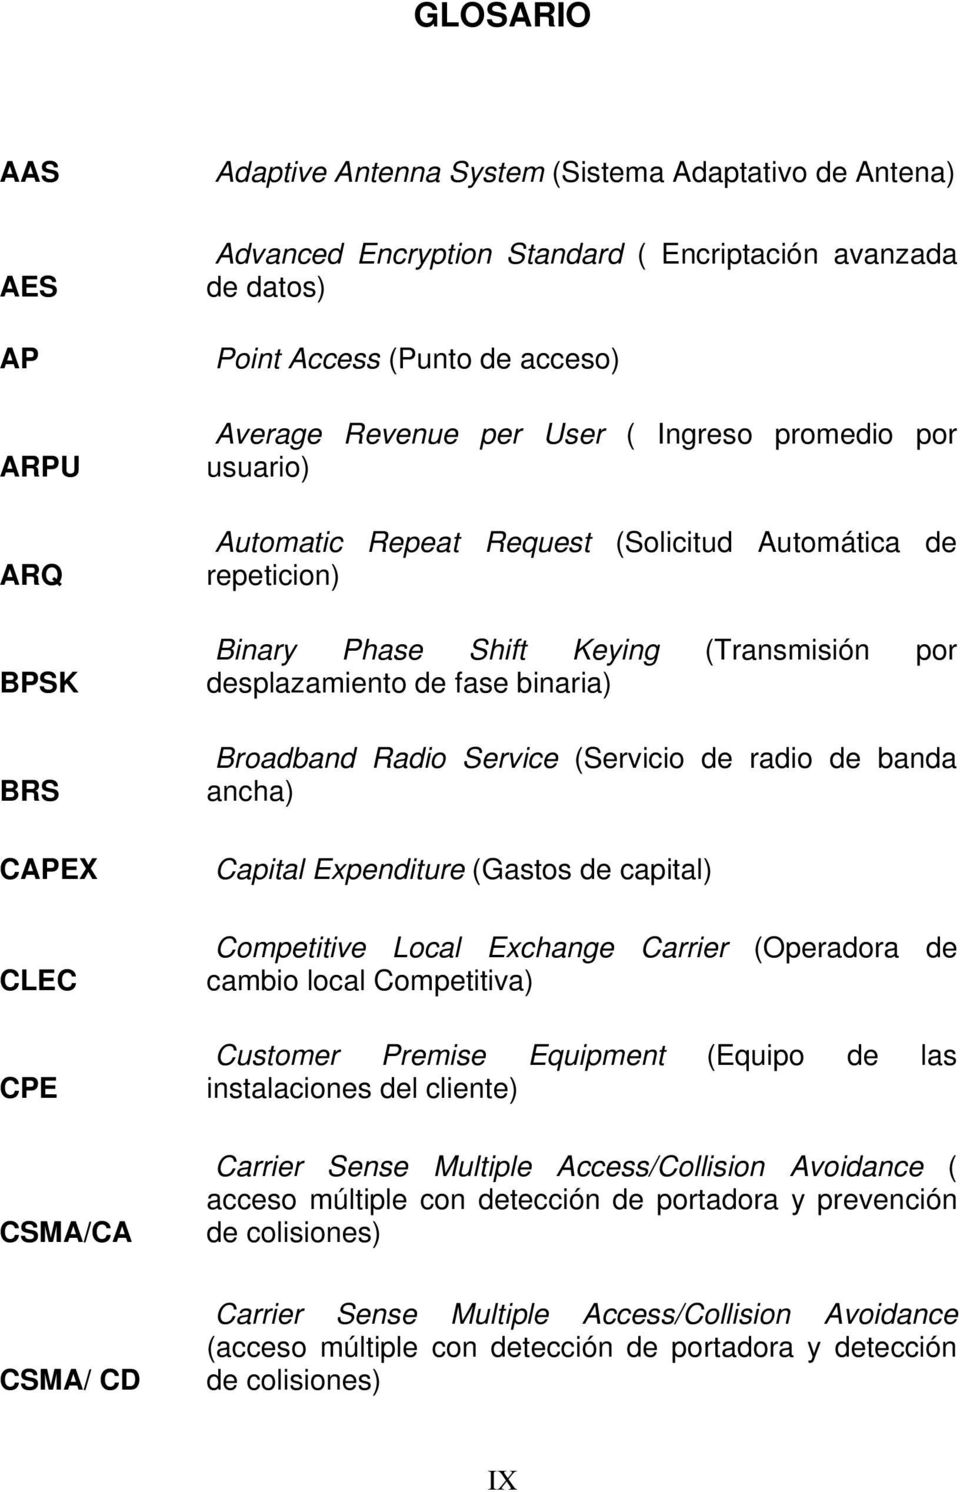 binaria) Broadband Radio Service (Servicio de radio de banda ancha) Capital Expenditure (Gastos de capital) Competitive Local Exchange Carrier (Operadora de cambio local Competitiva) Customer Premise